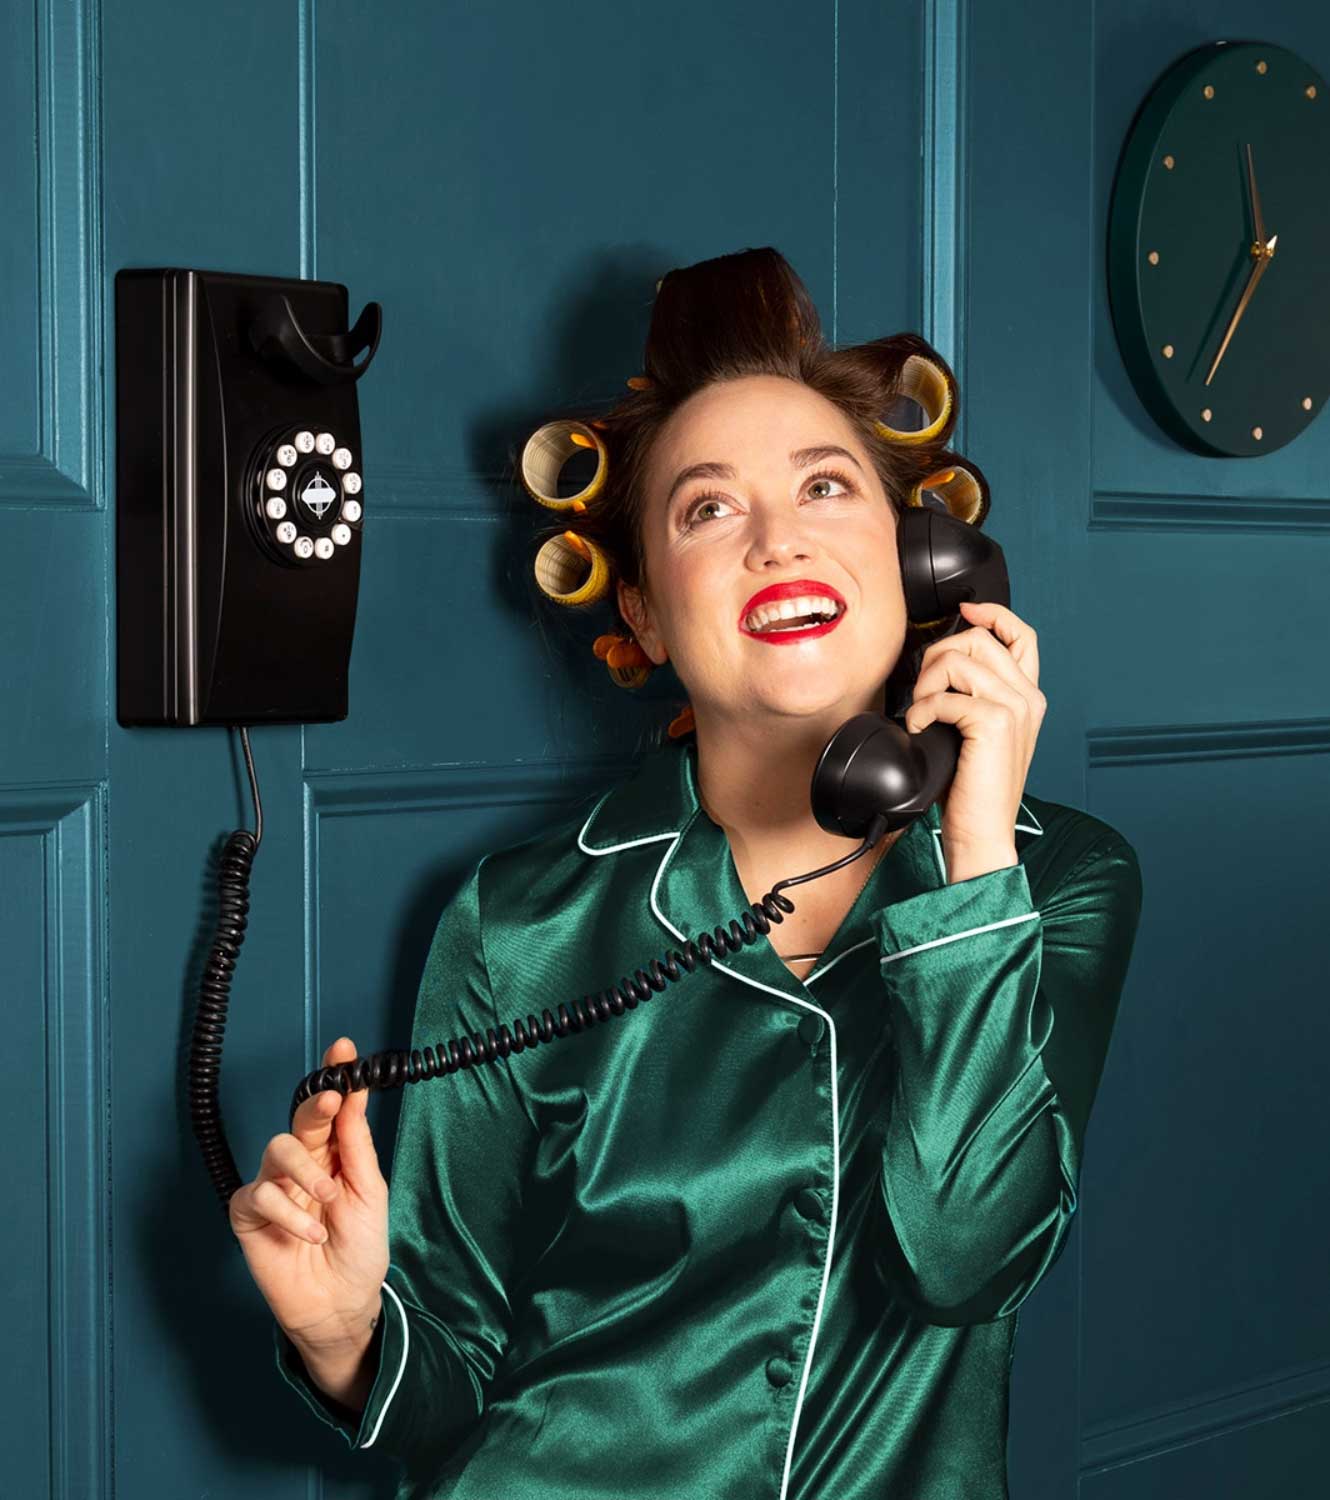 Image du héros du service de téléphonie résidentielle Ooma – Une femme utilisant un vieux téléphone analogique pour se connecter au service VoIP Ooma Telo.